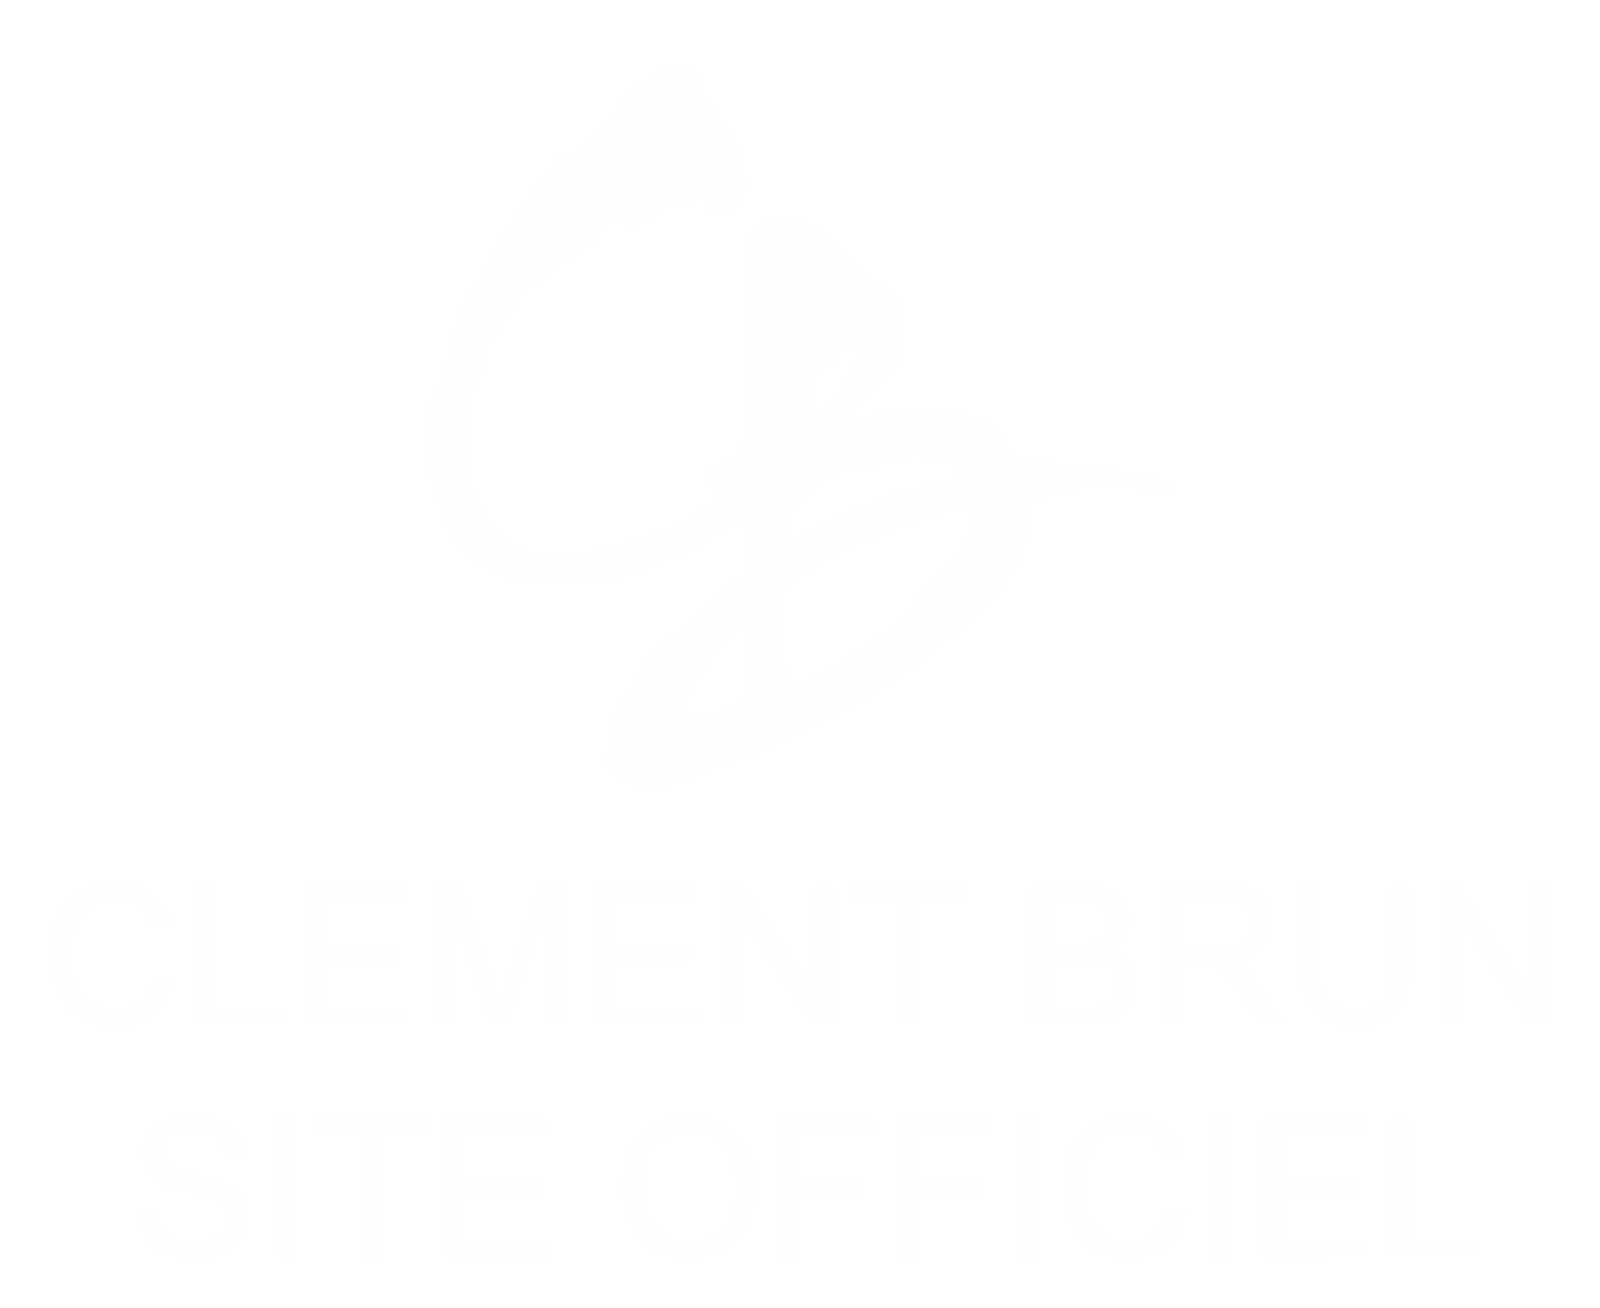 Clément Brun Site internet site we logo site officiel